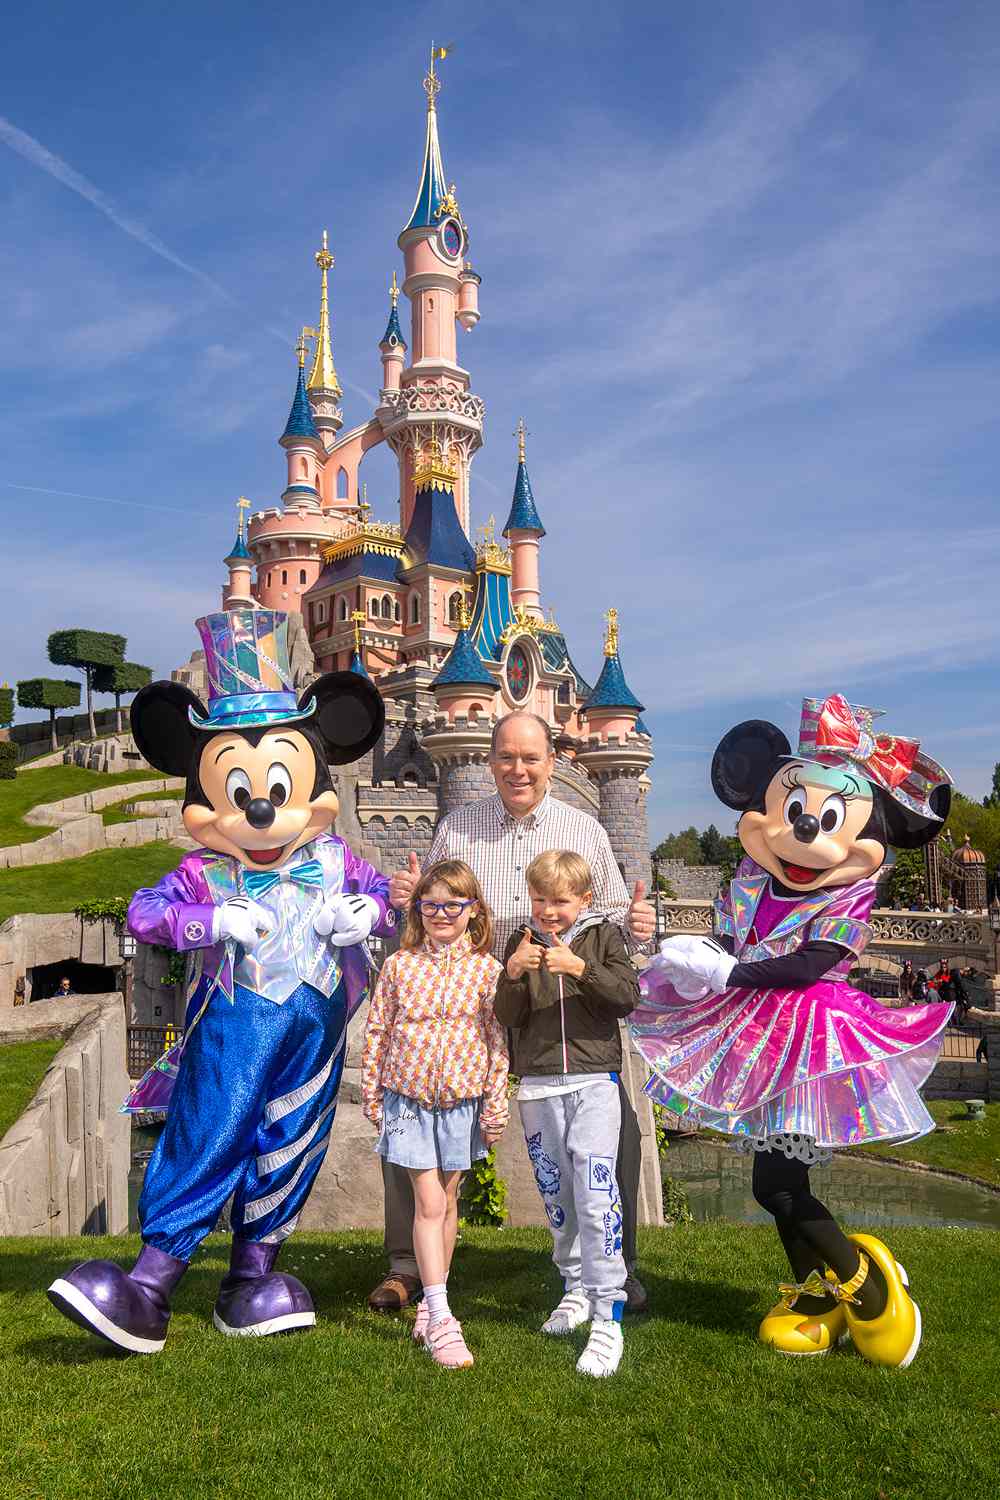 Prince Albert and kids visit Disney Paris